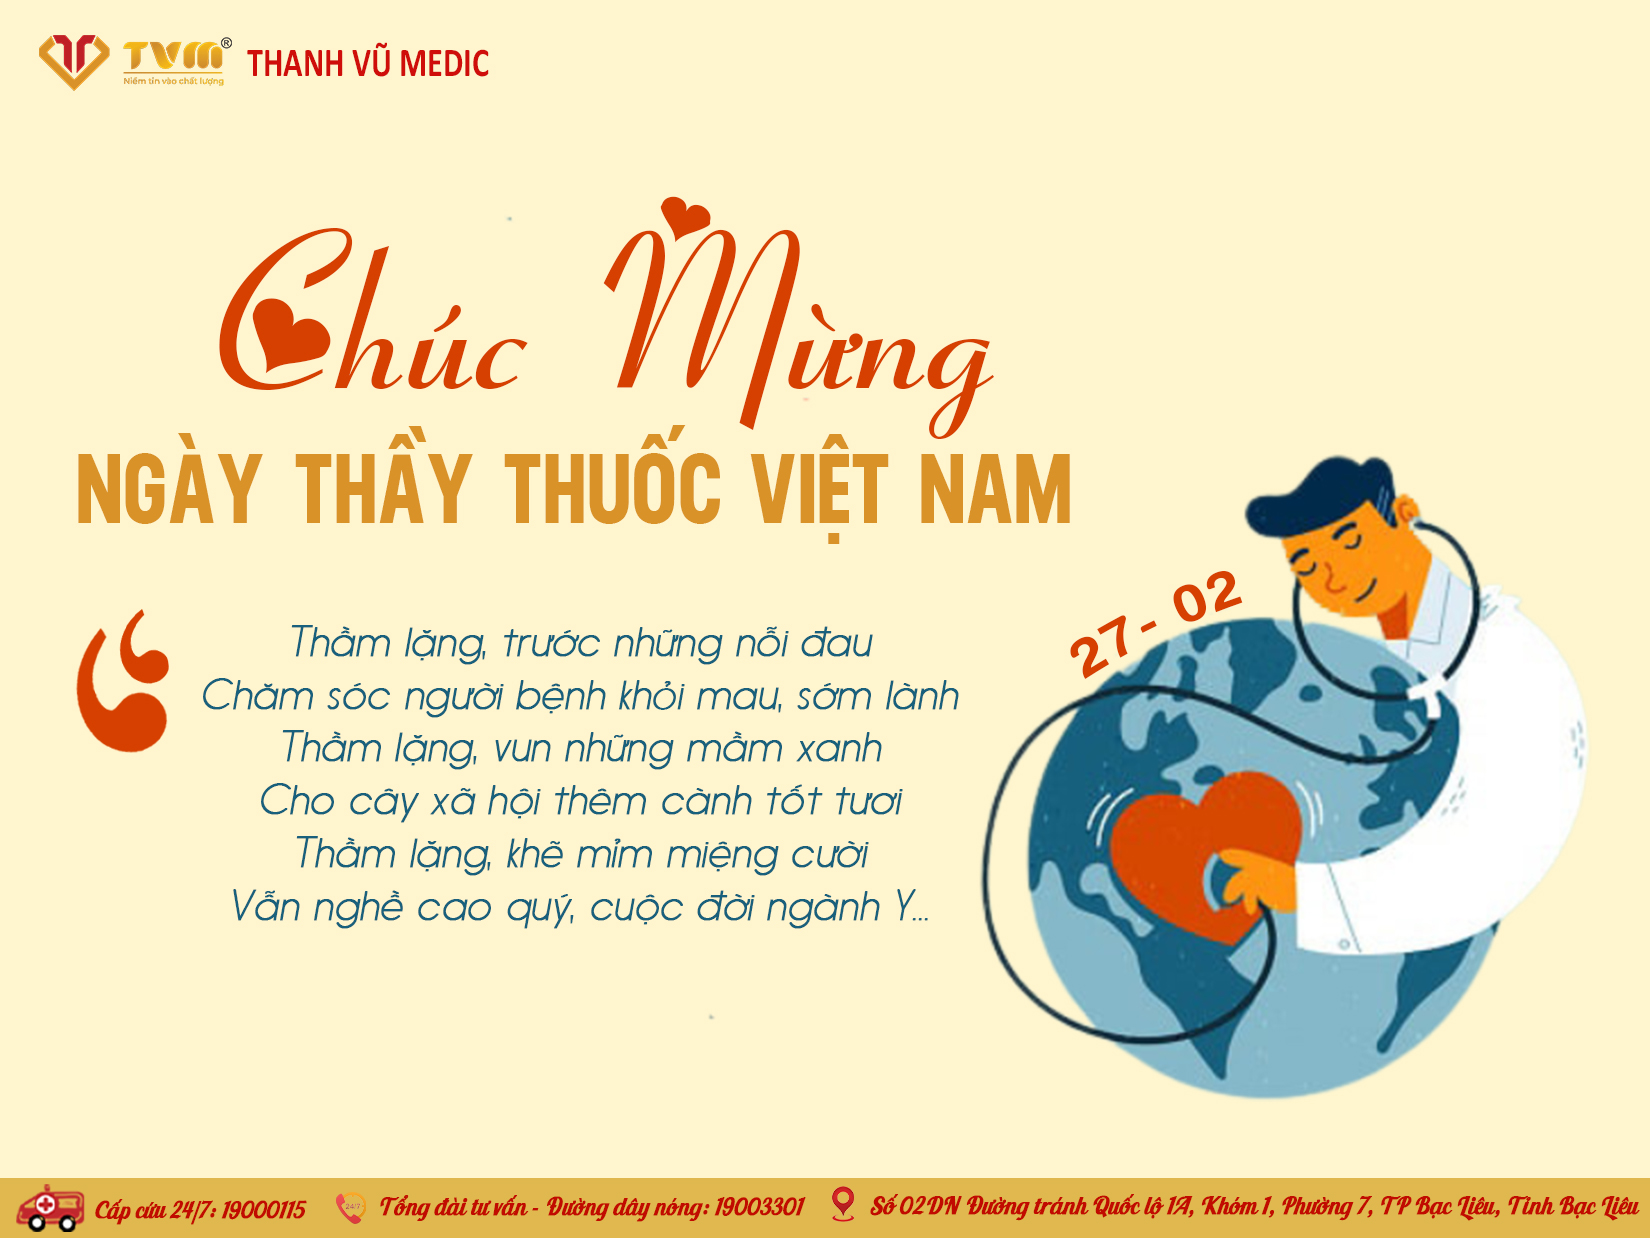 Thanh Vũ Medic chúc mừng 69 năm ngày Thầy thuốc Việt Nam (27/02)